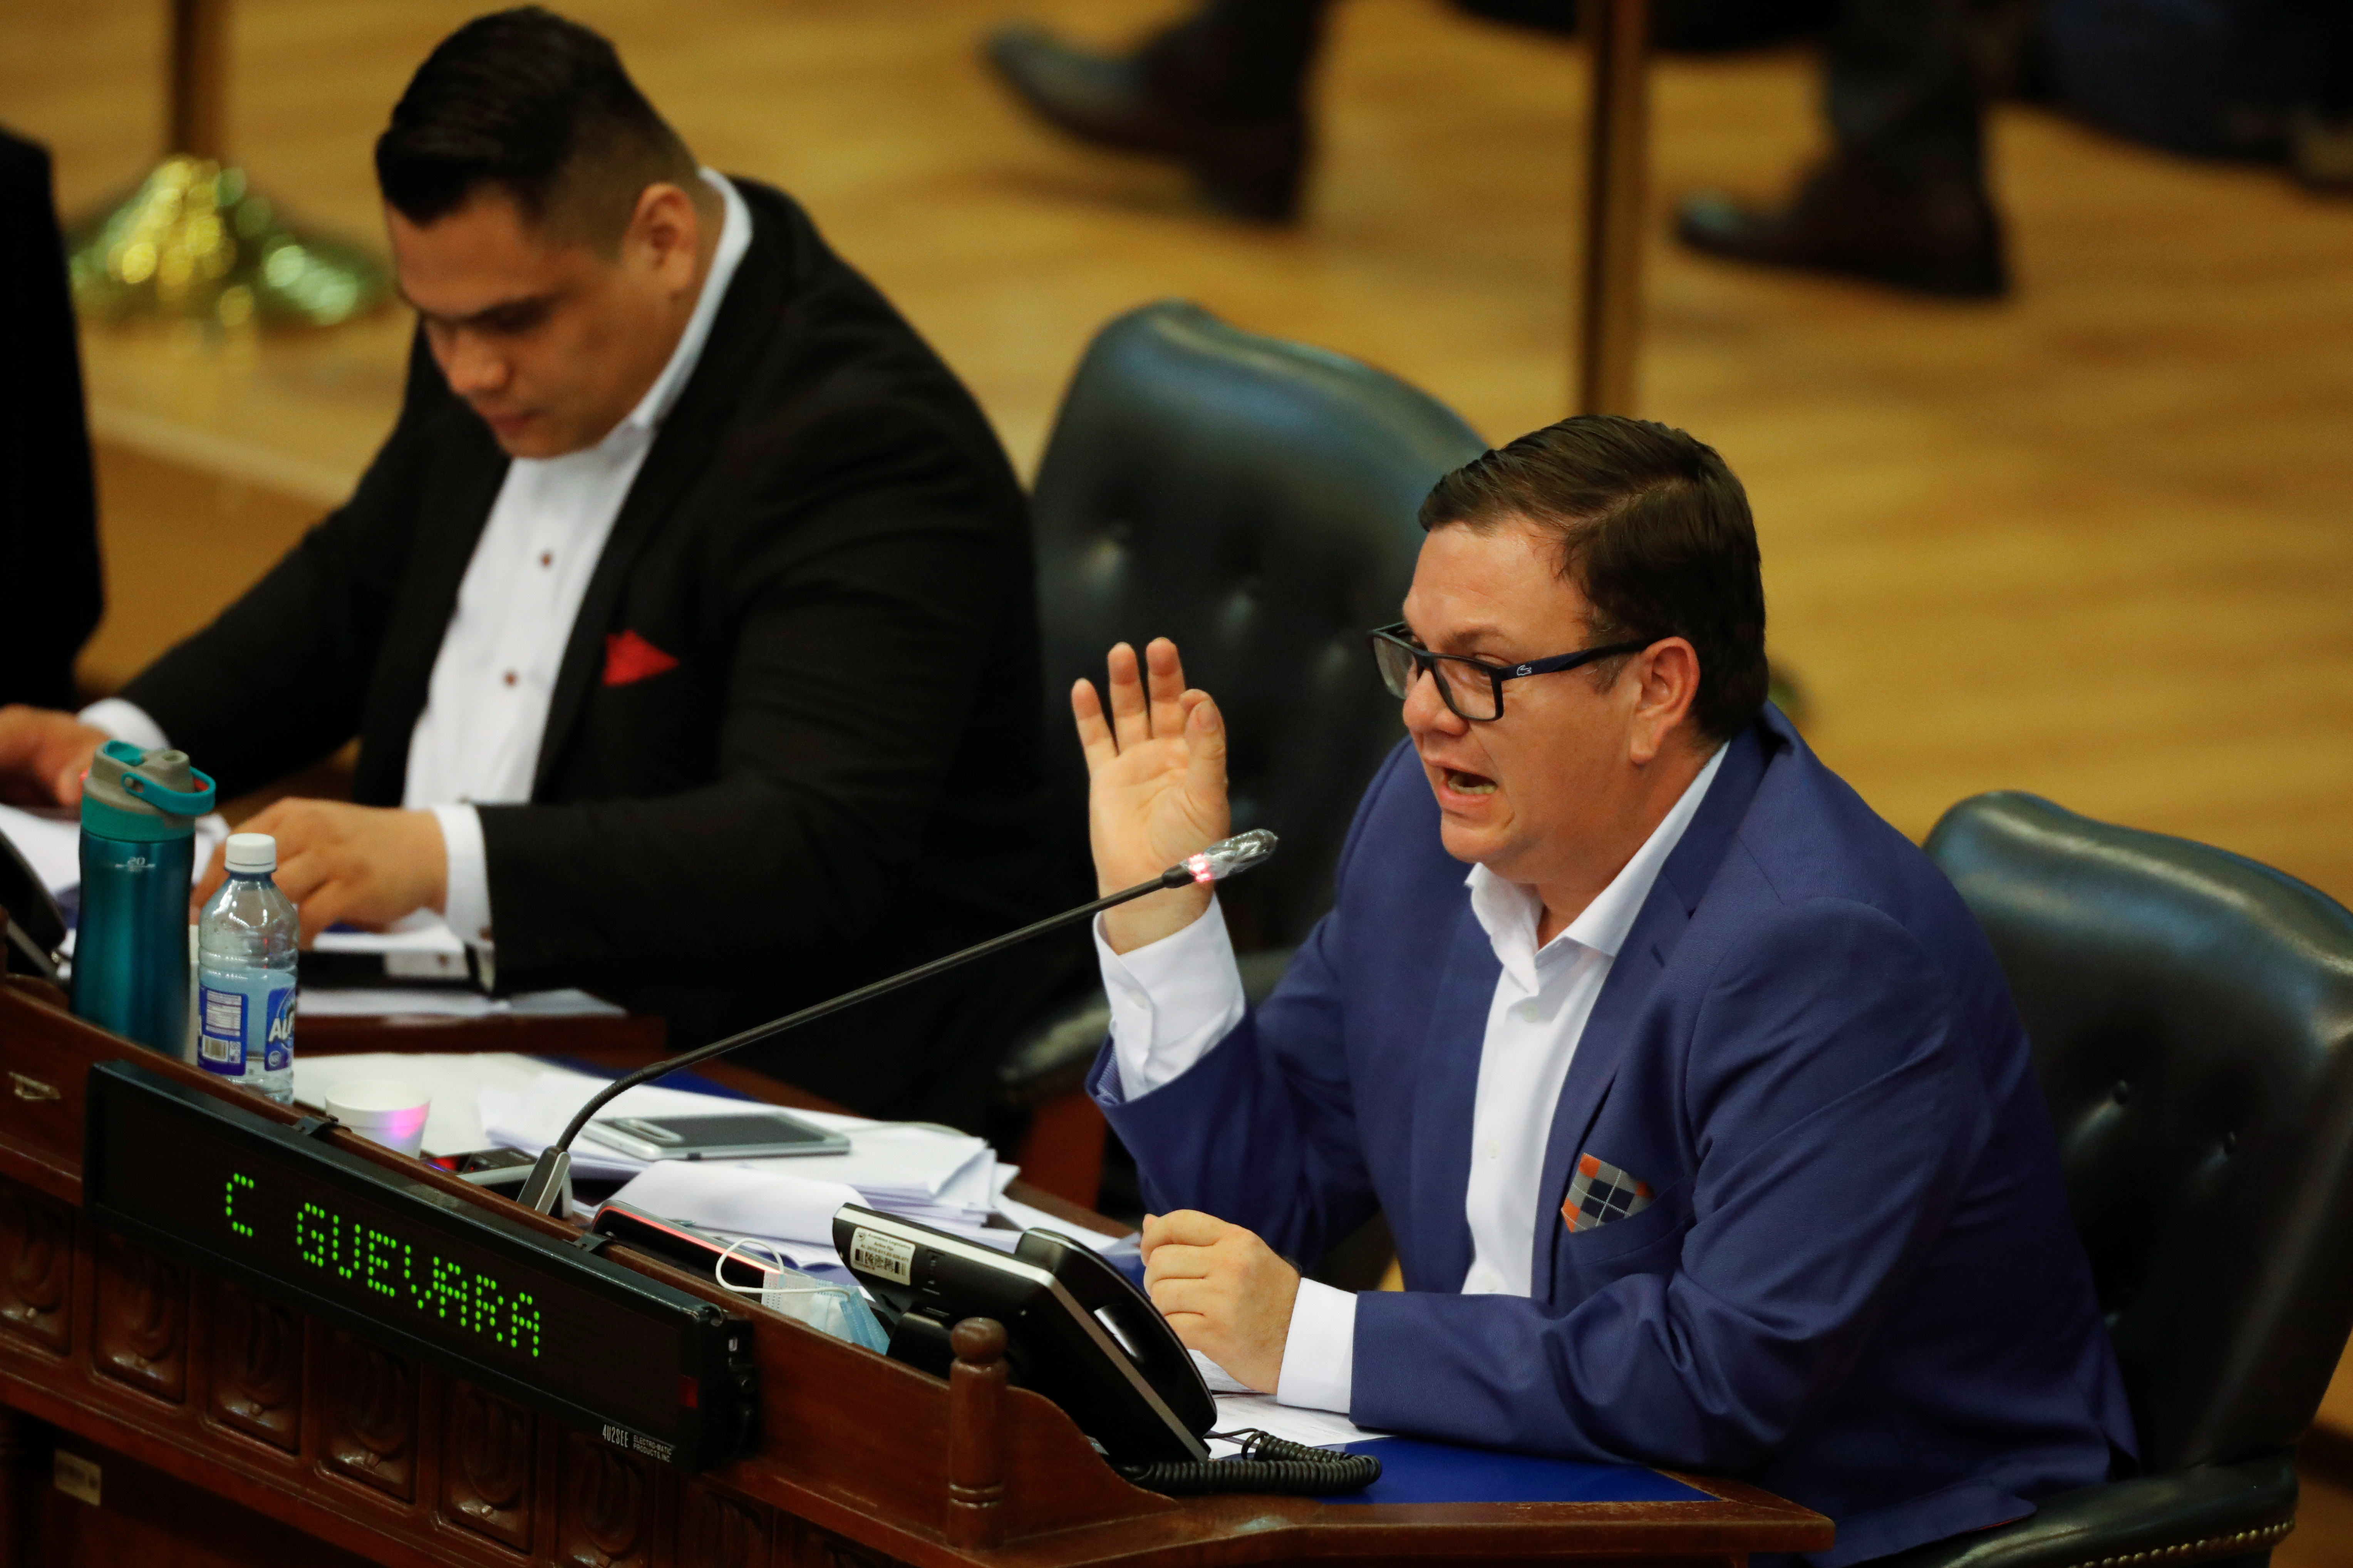 El líder de la mayoría del Congreso salvadoreño, Christian Reynaldo Guevara Guadrón, habla durante una sesión parlamentaria en San Salvador el 11 de mayo de 2021 (REUTERS/Jose Cabezas)